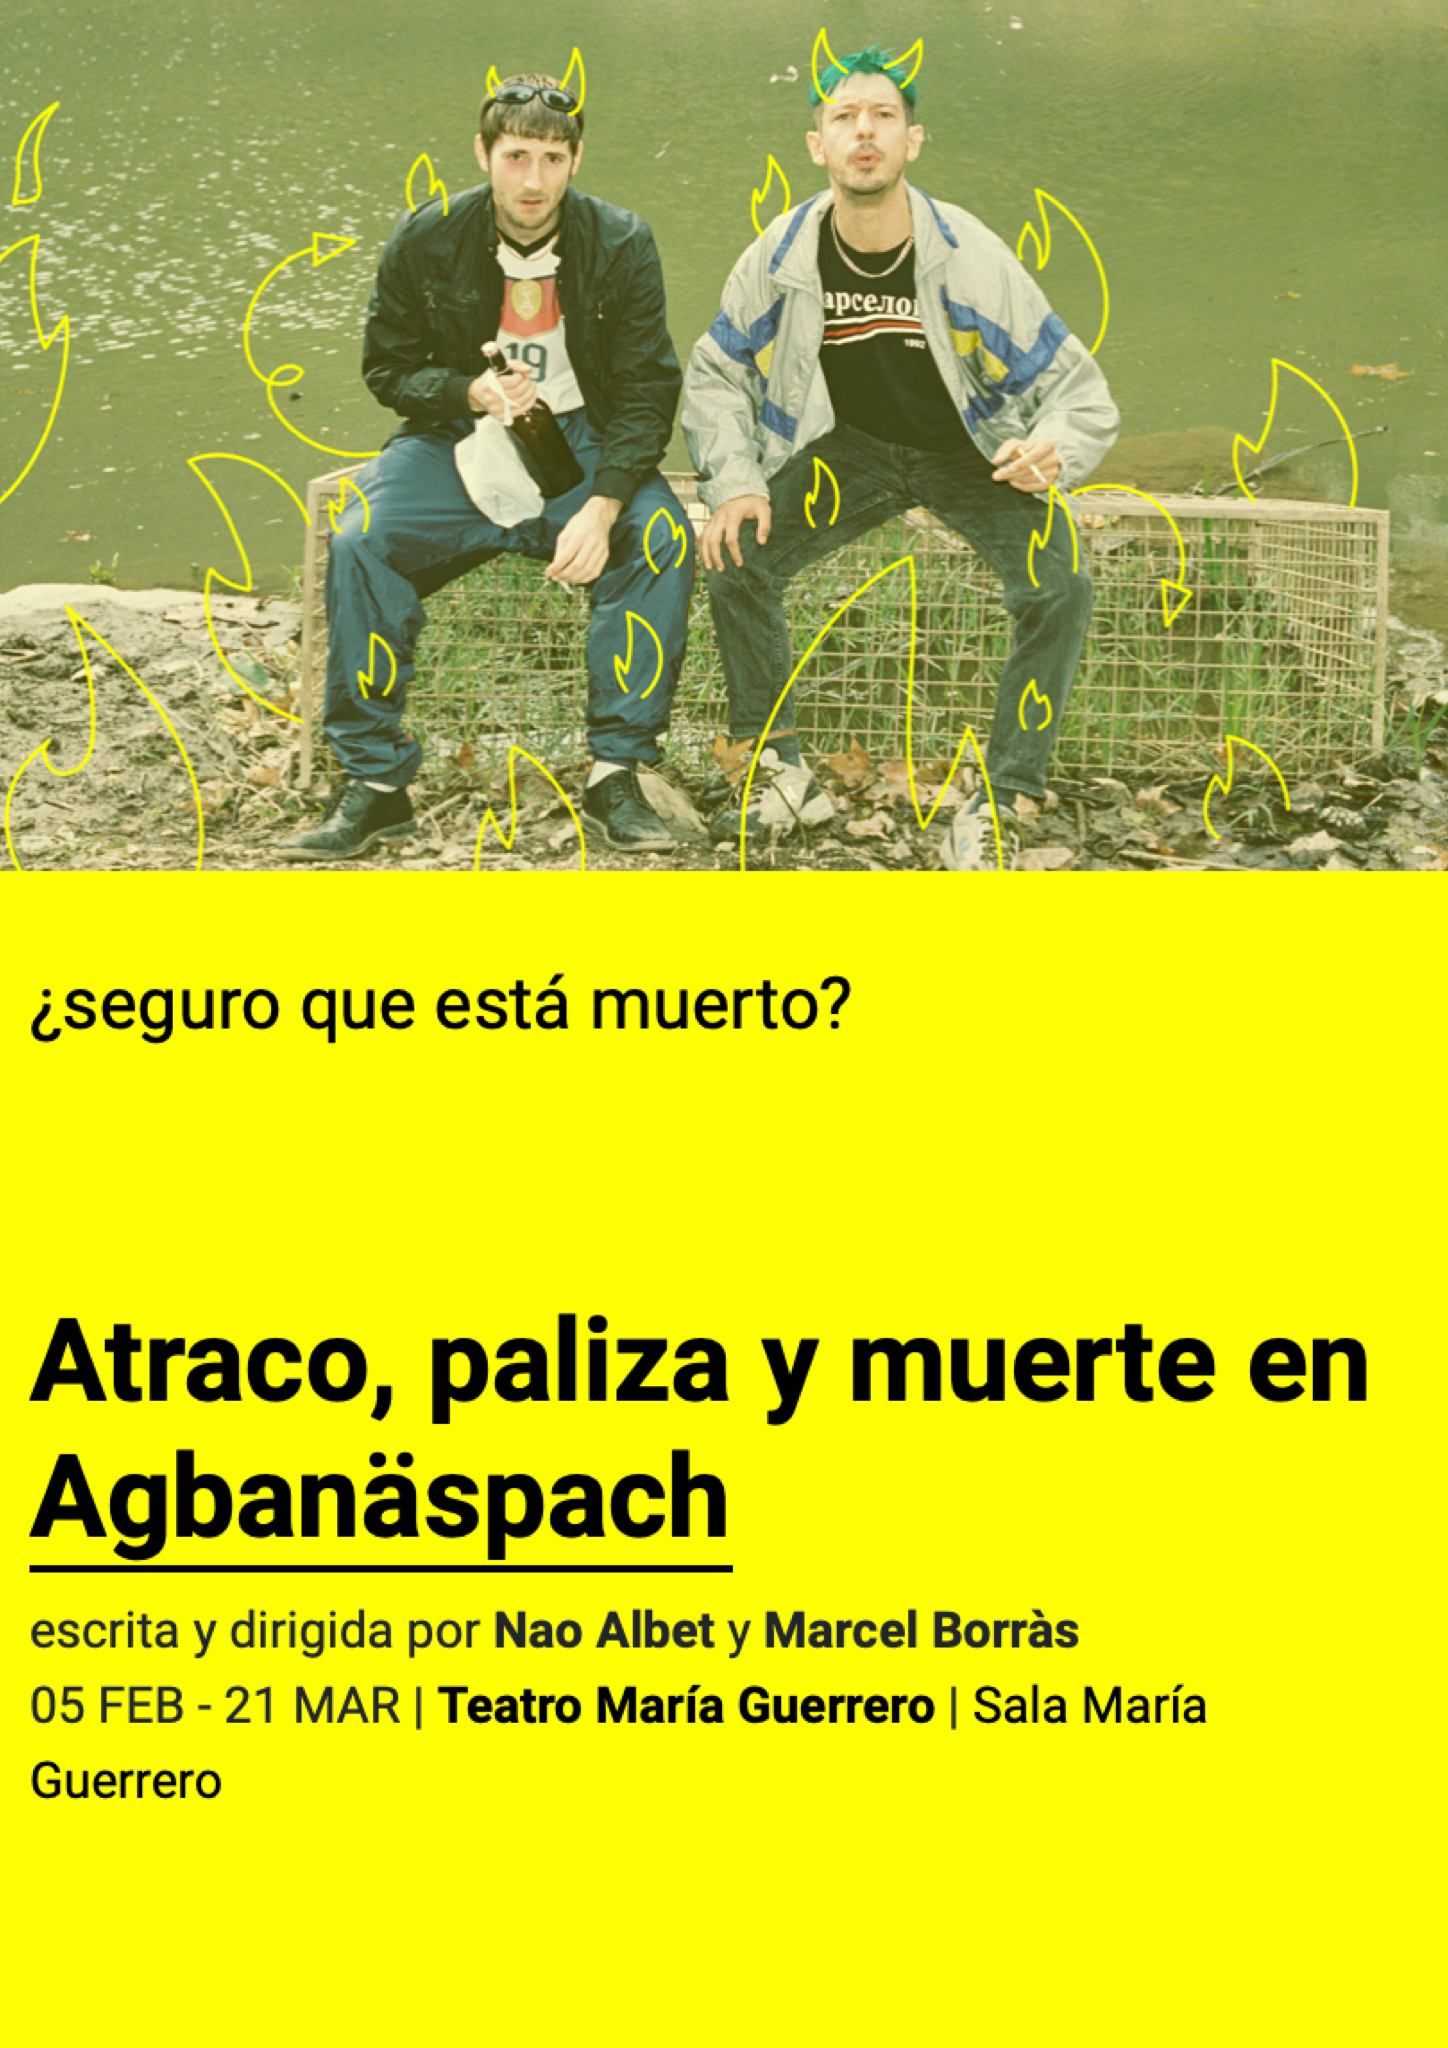 ATRACO, PALIZA Y MUERTE EN AGBANÄSPACH en el Teatro María Guerrero